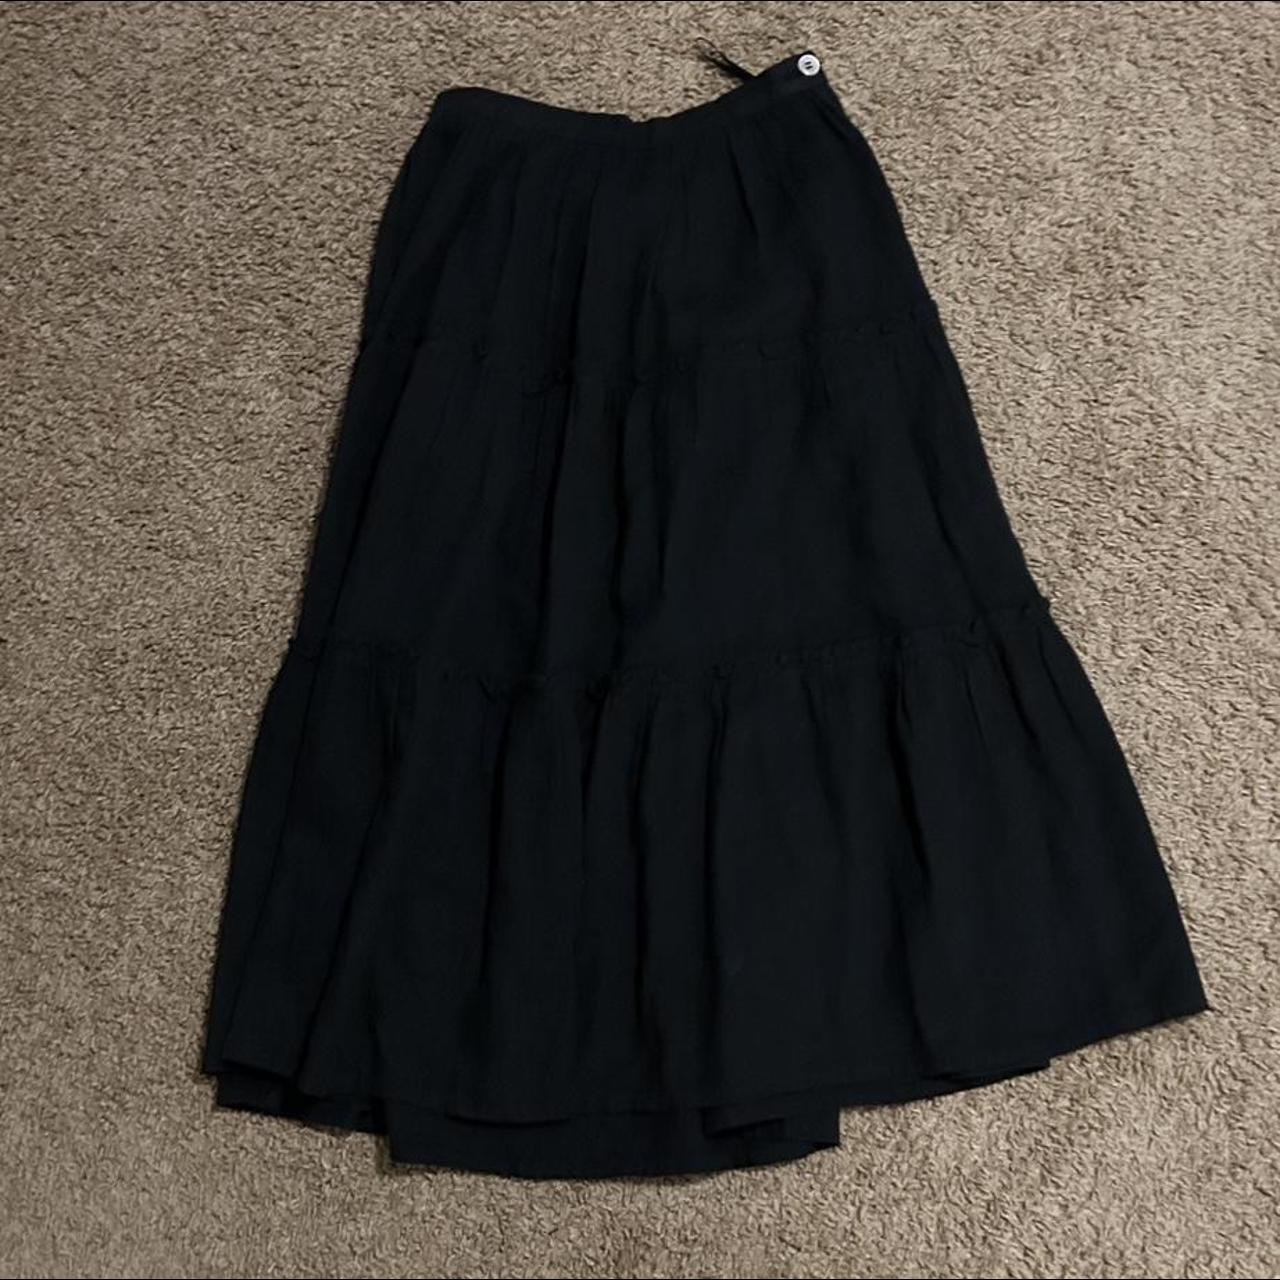 Comme des Garçons Women's Black Skirt | Depop